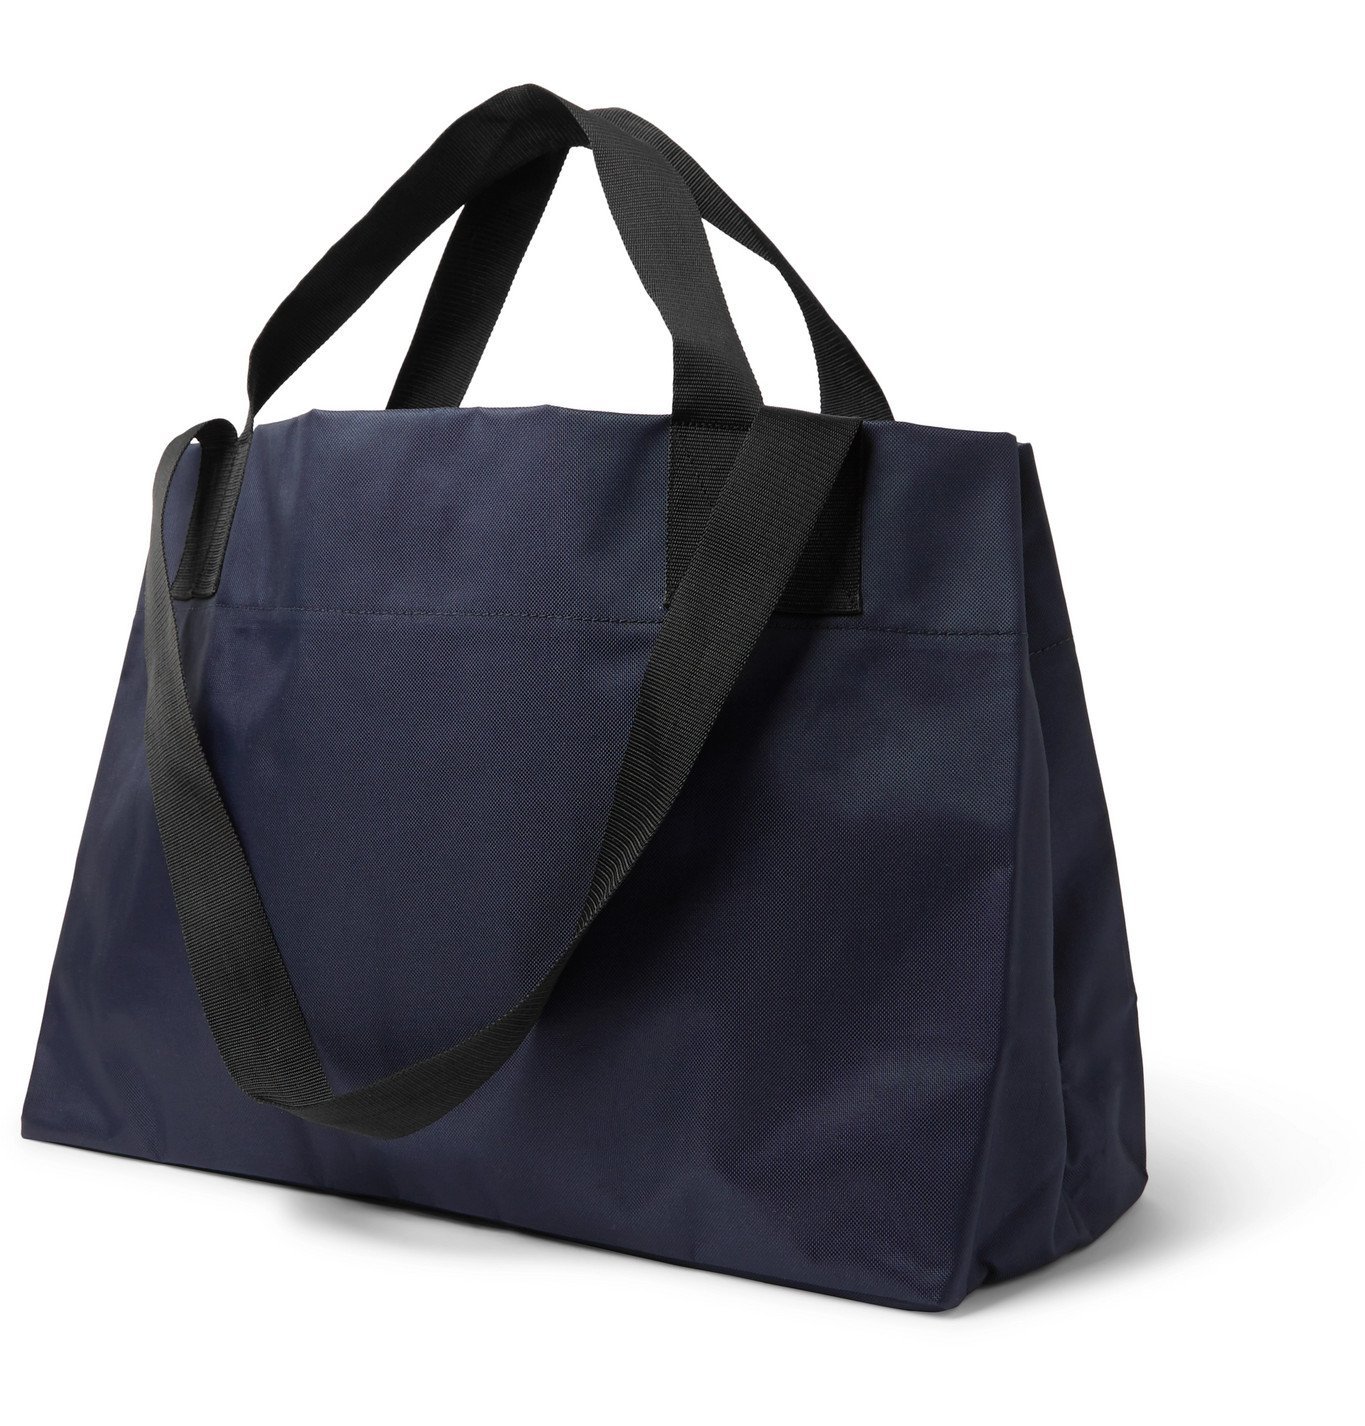 OLIVER SPENCER - Leather-Trimmed Nylon Tote Bag - Blue